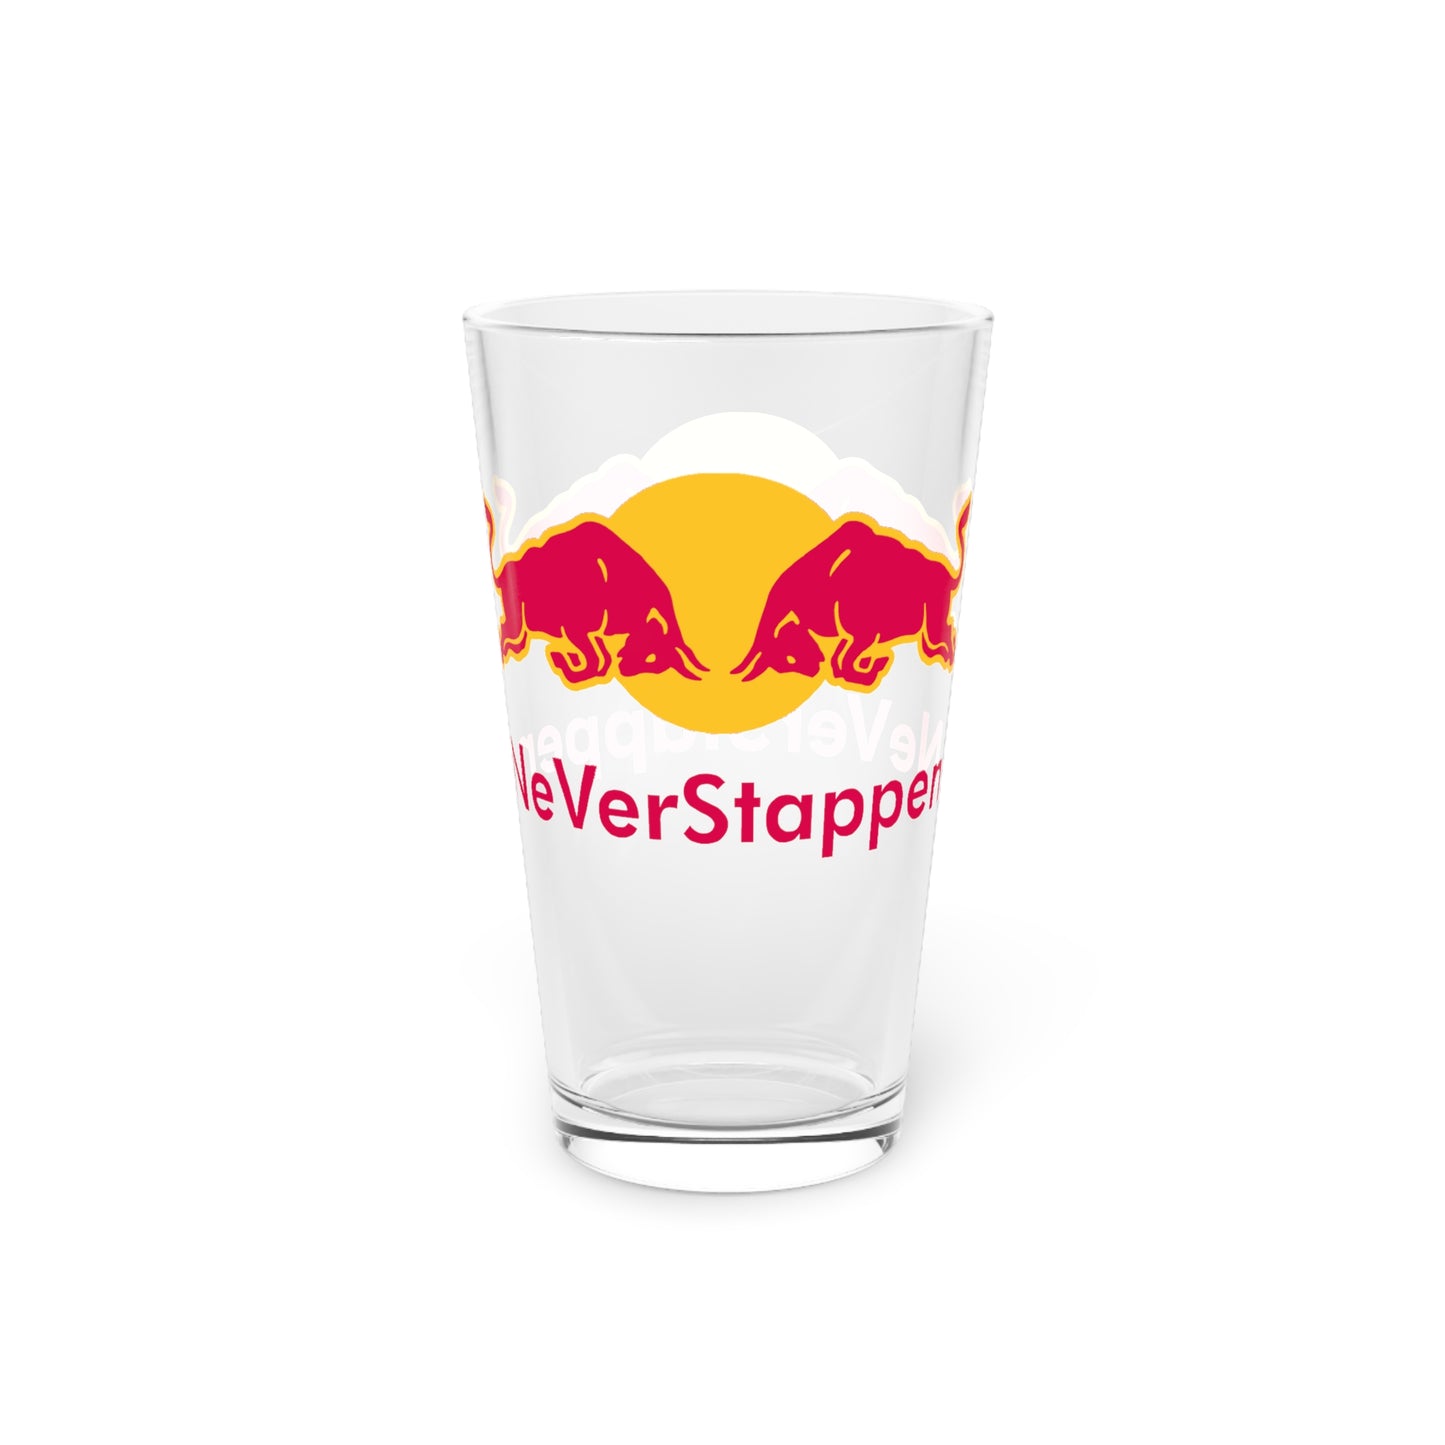 NeVerStappen Red Bull Formula 1 F1 Max Verstappen Pint Glass, 16oz Next Cult Brand